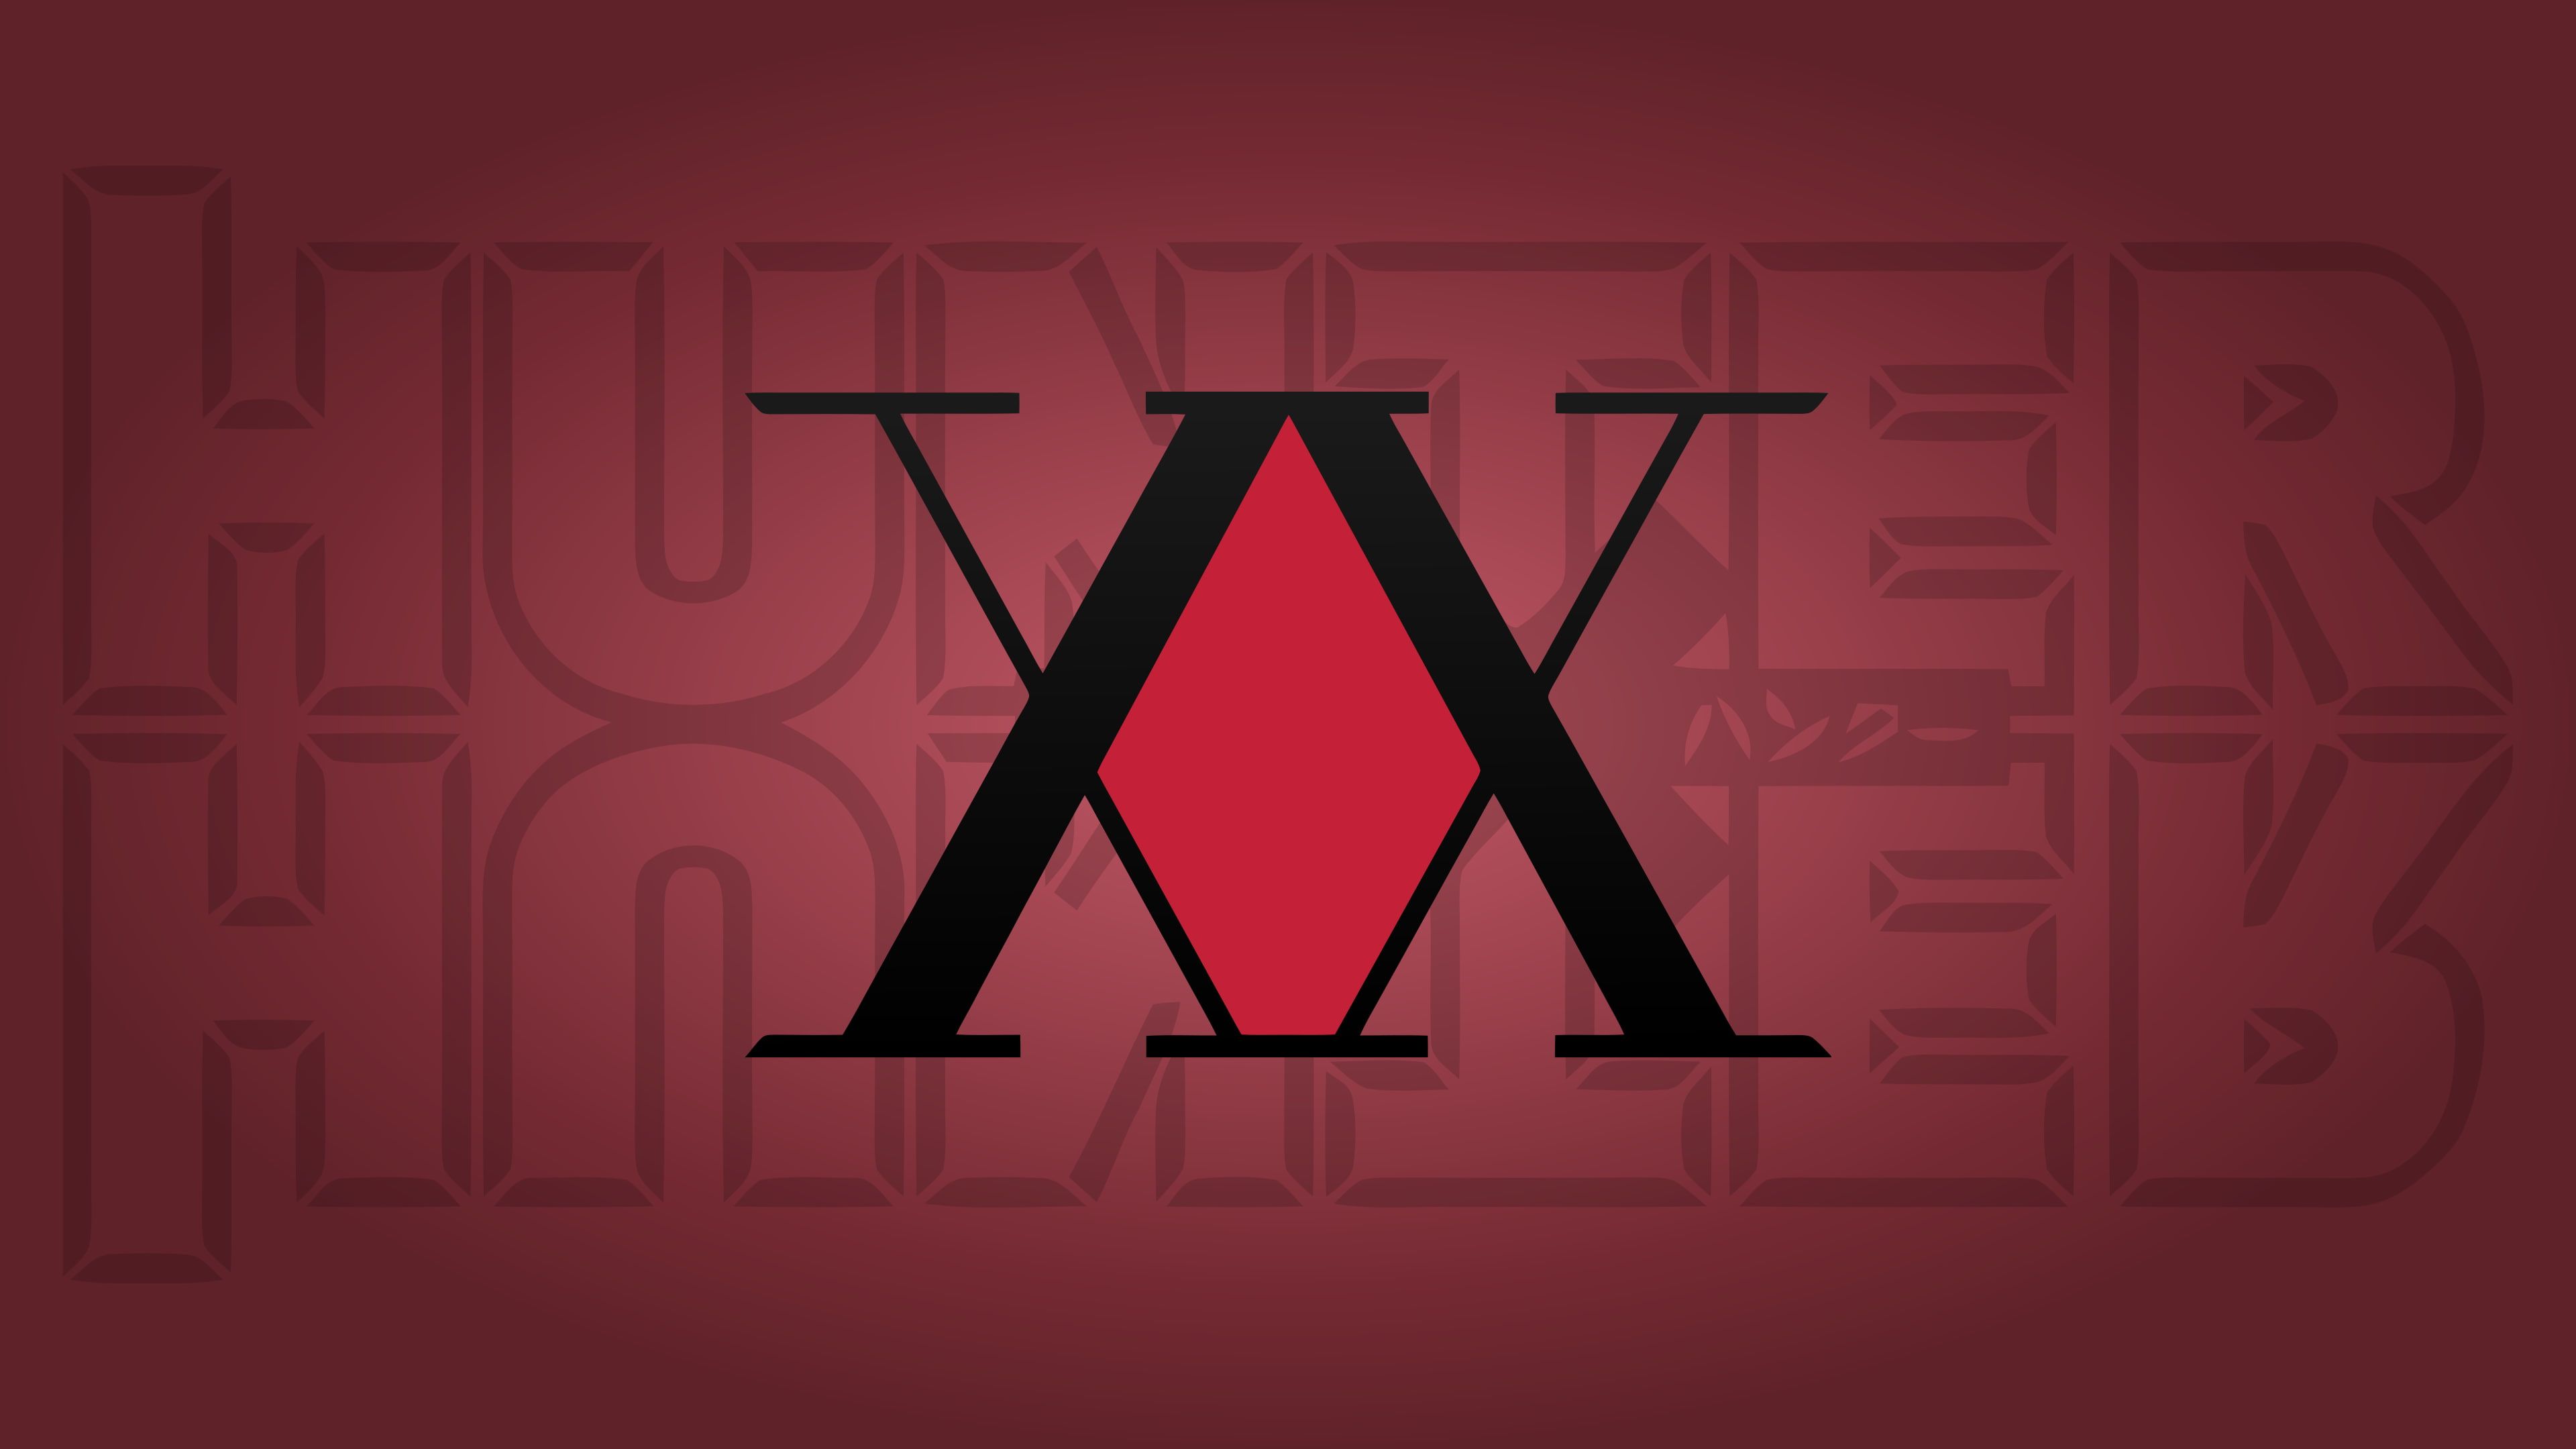 Hunter x Hunter #anime red background #red K #wallpaper #hdwallpaper #desktop. Hunter x hunter, Hunter logo, Best shounen anime